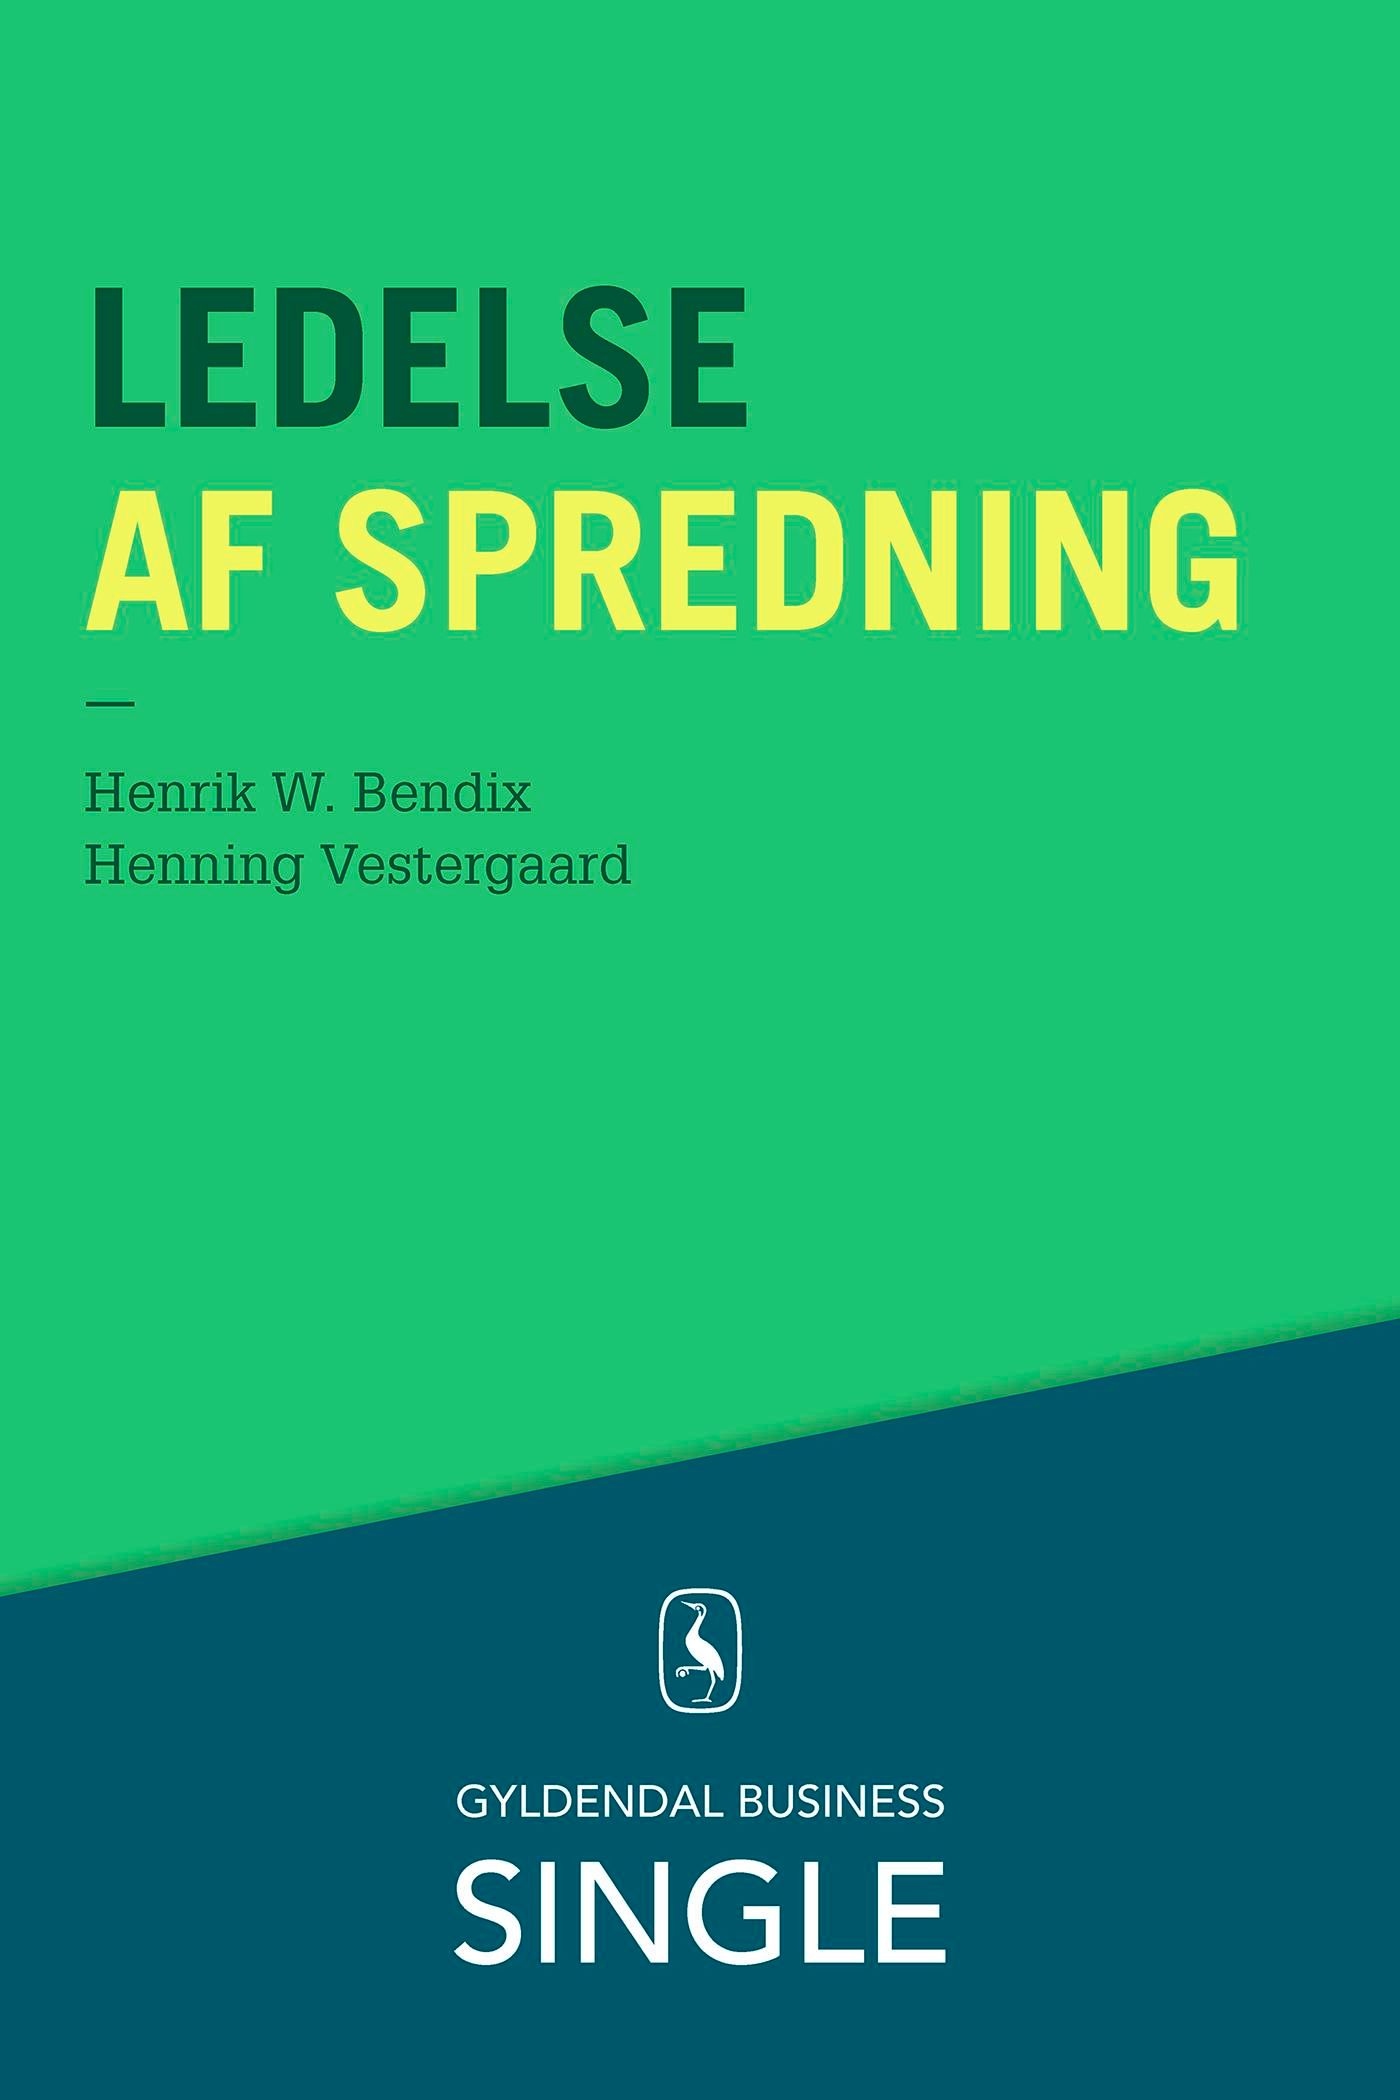 Ledelse af spredning, e-bok av Henrik W. Bendix, Henning Vestergaard